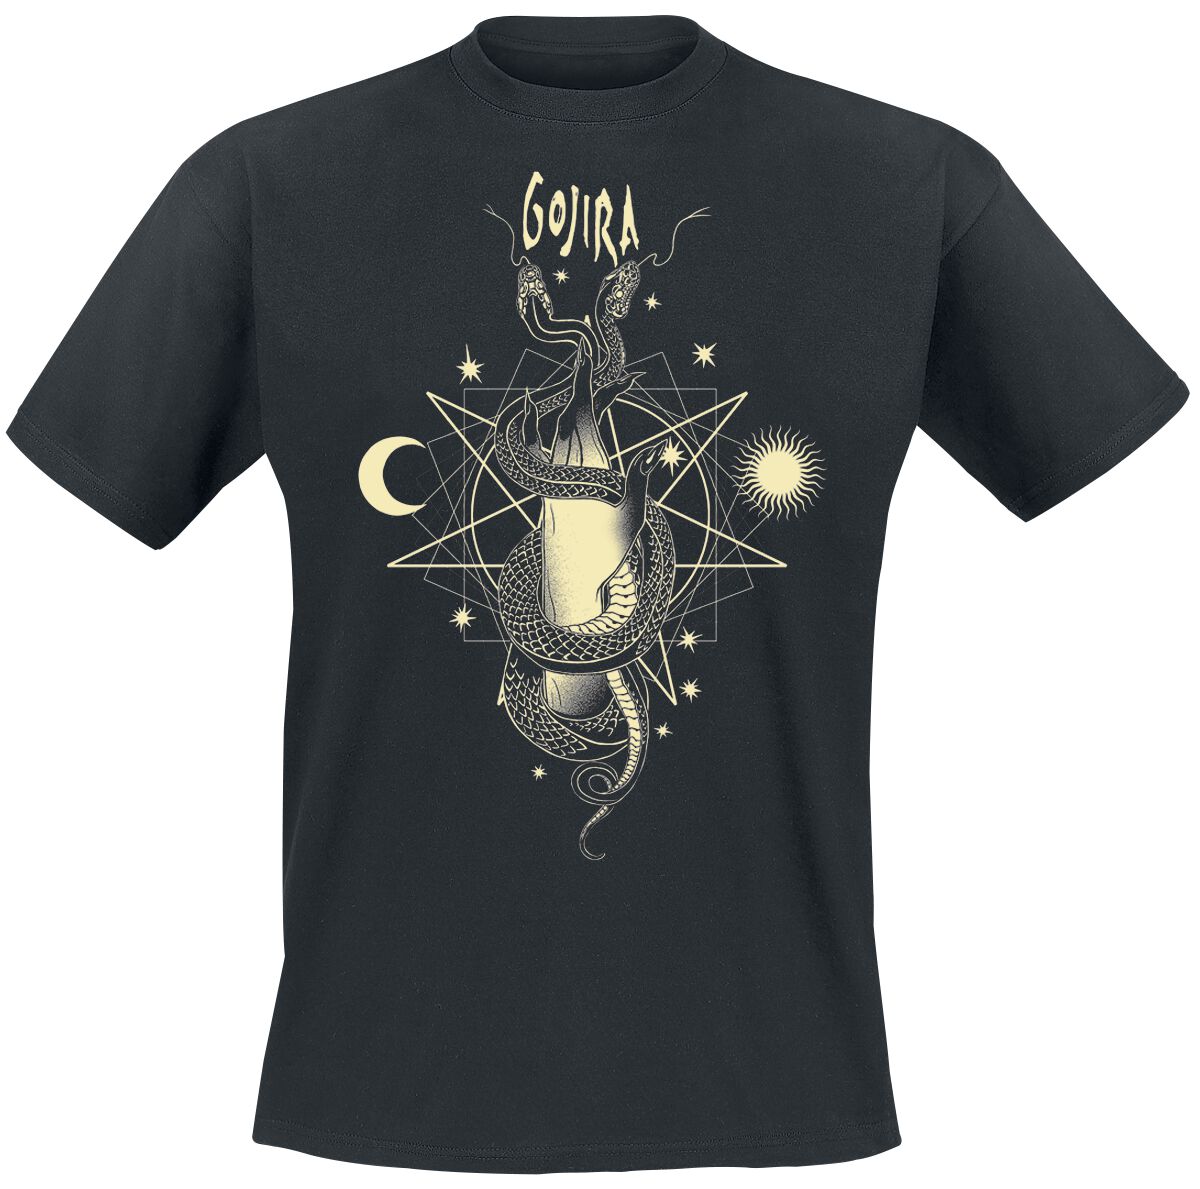 Gojira T-Shirt - Celestial Snakes - S bis XXL - für Männer - Größe S - schwarz  - Lizenziertes Merchandise!